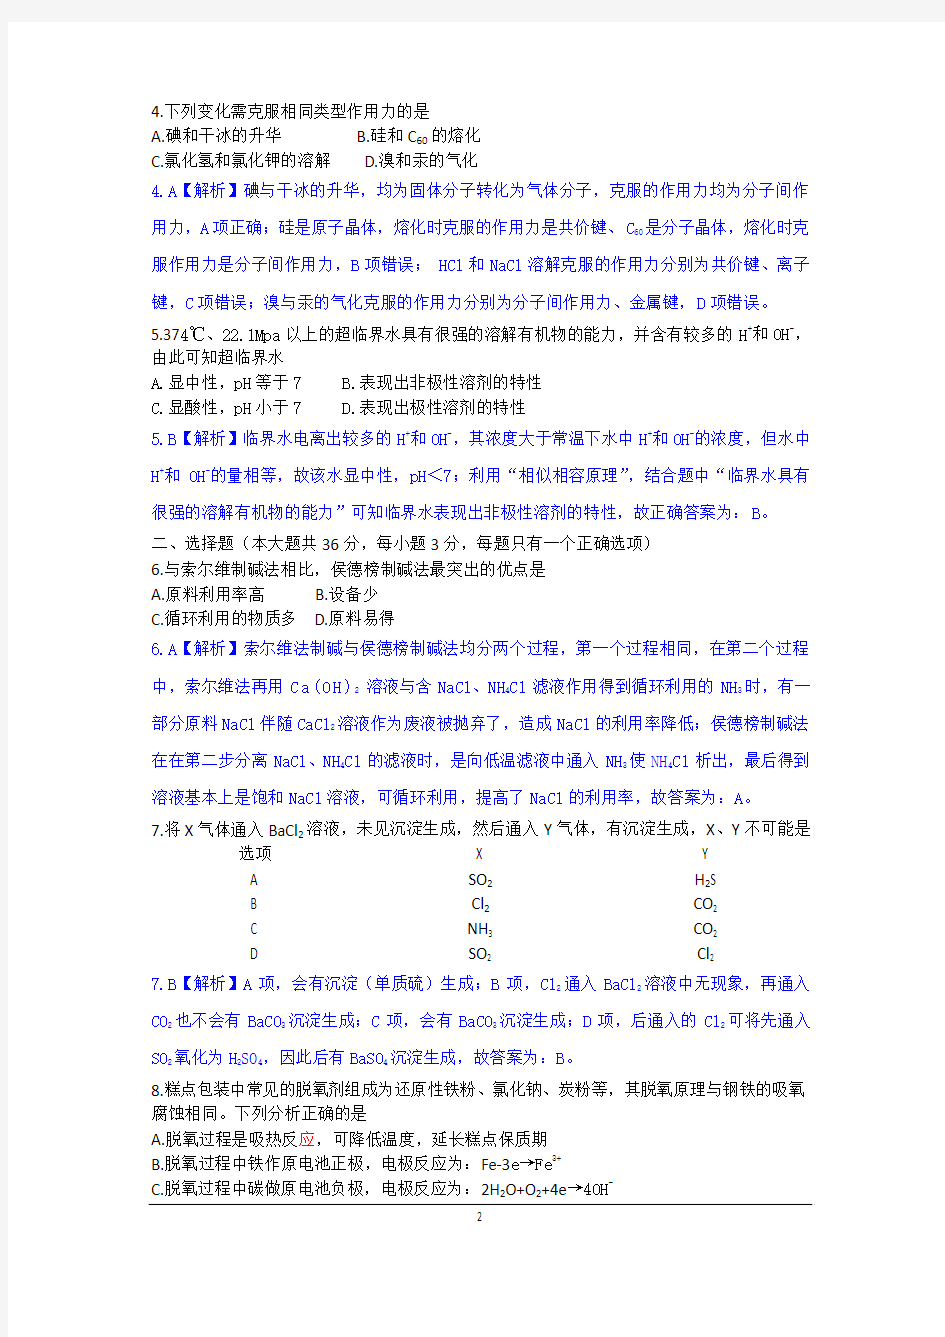 2013年高考真题----化学(上海卷)解析版 Word版含答案